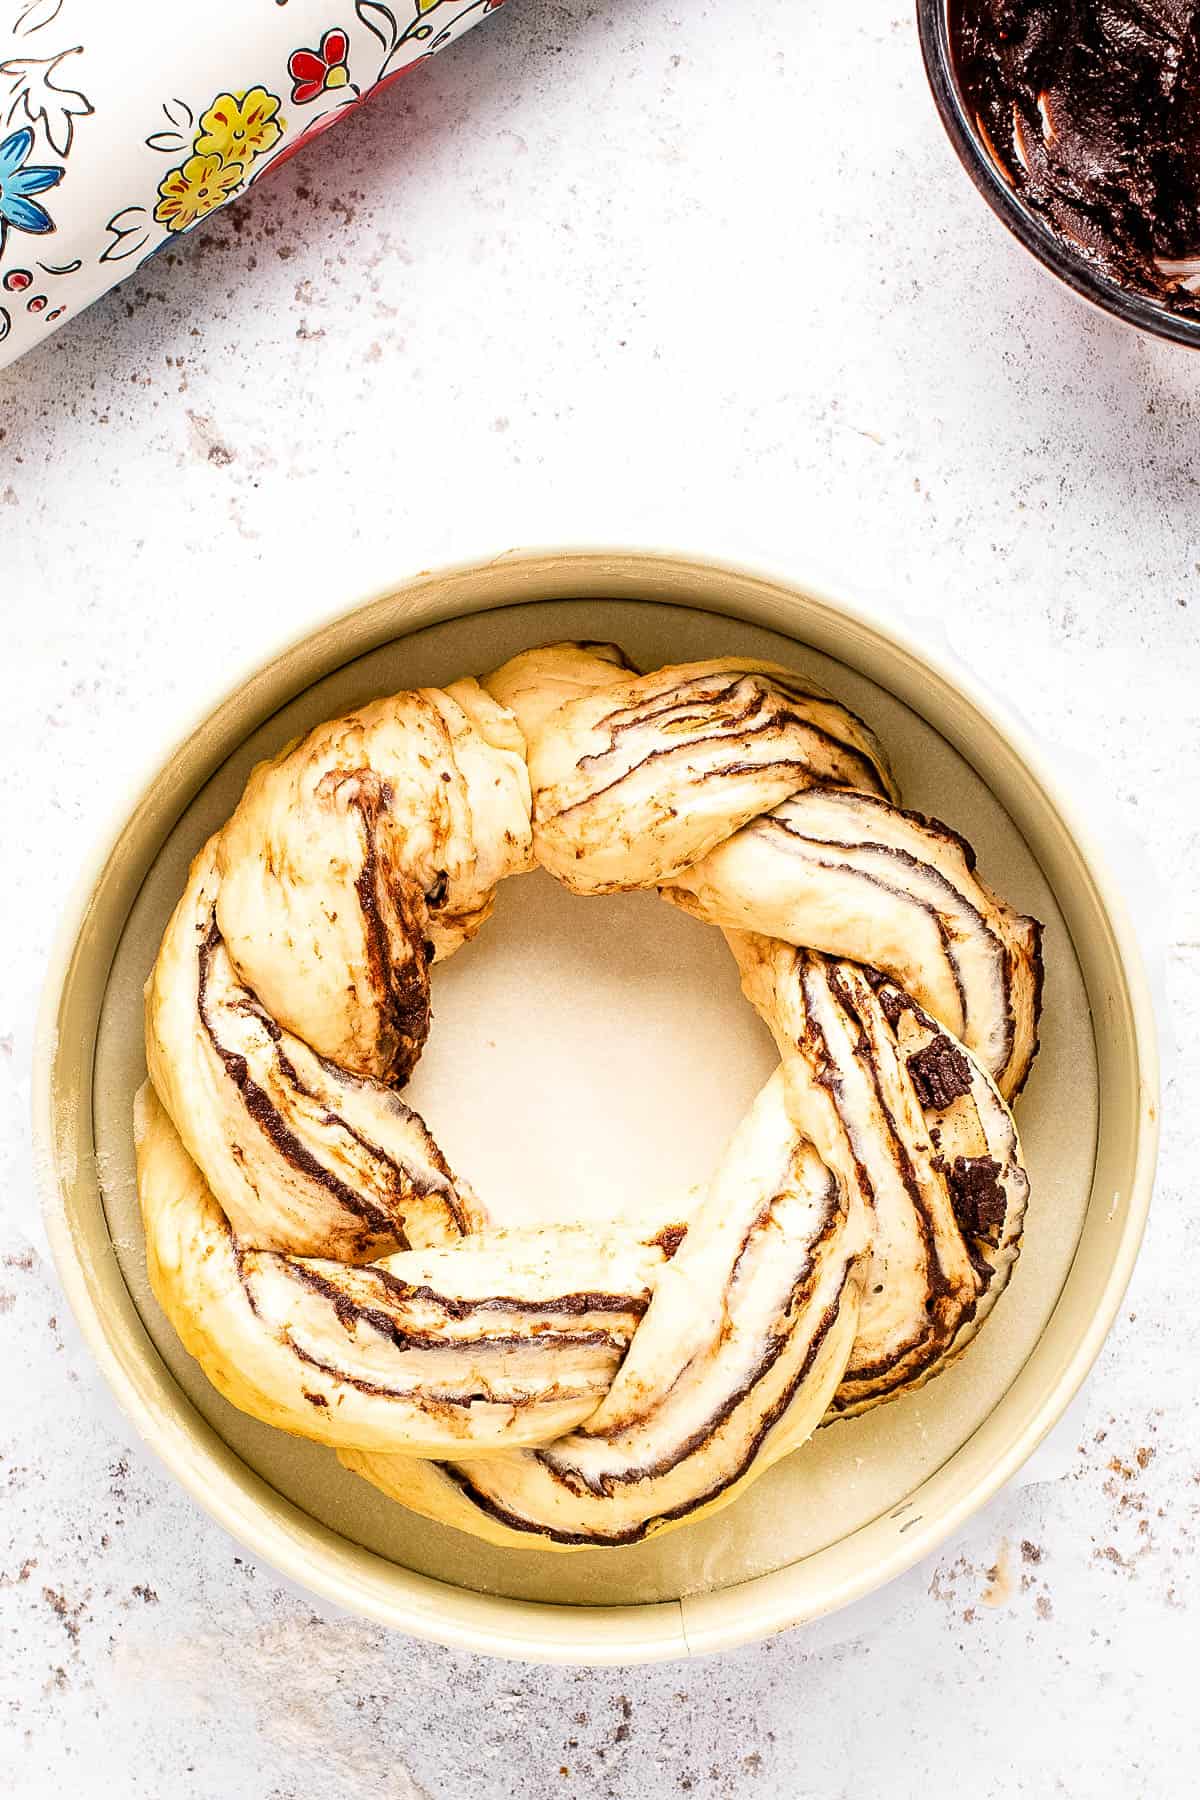 place the babka dough ring into a baking pan.